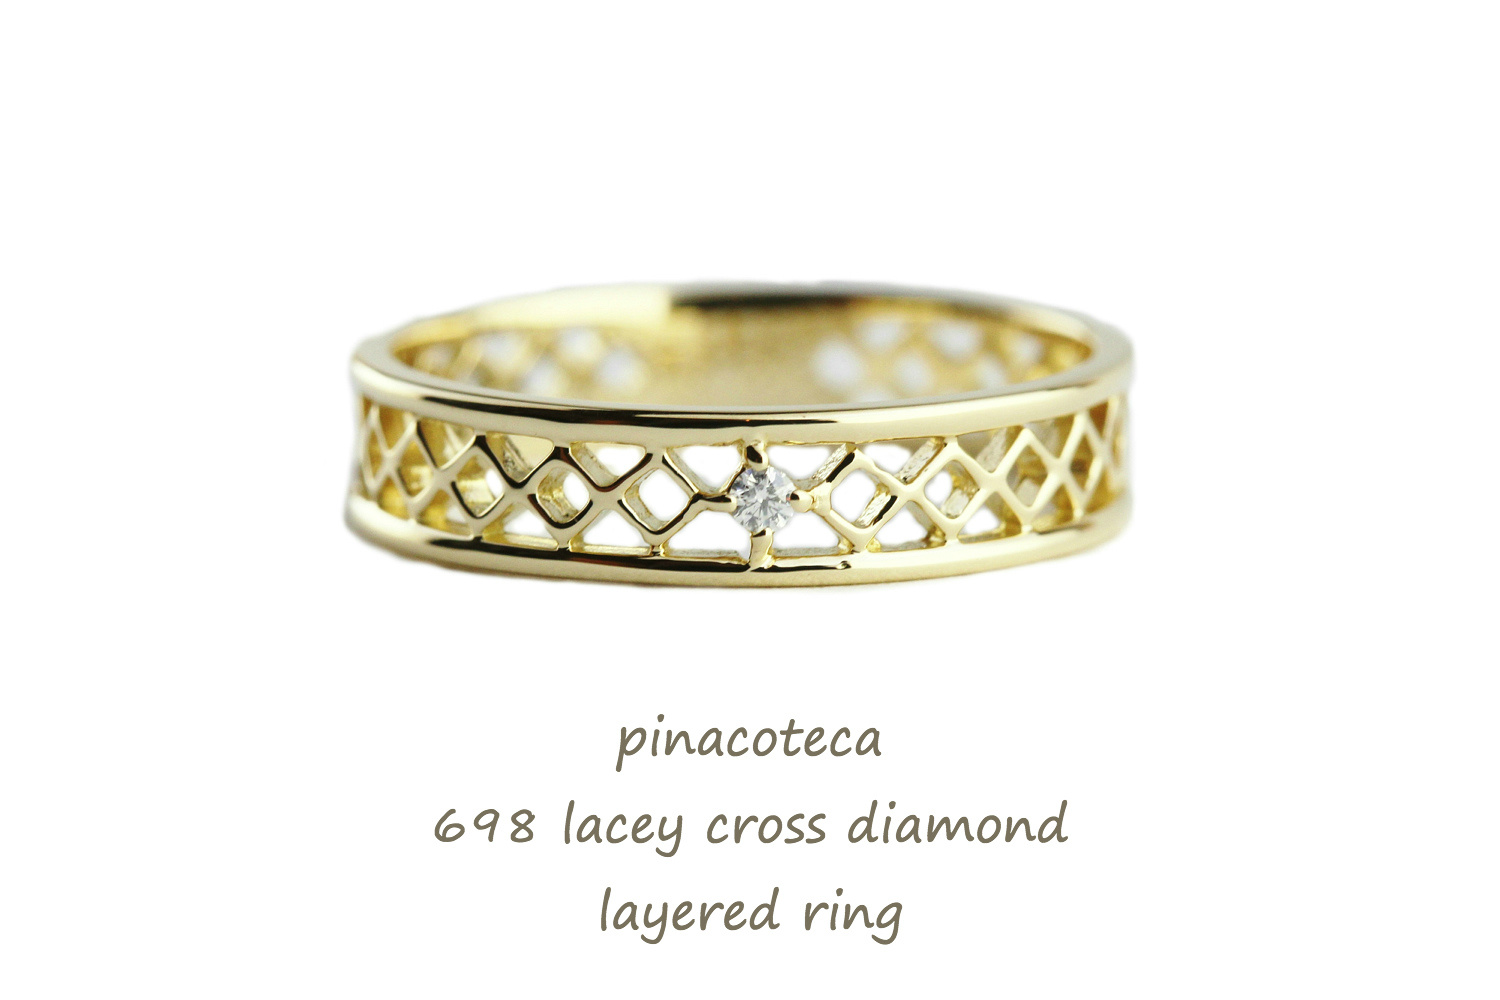 ピナコテーカ 698 レーシー クロス 一粒ダイヤモンド レイヤード リング ピンキーリング 18金,pinacoteca Lacey Cross Diamond Ring K18